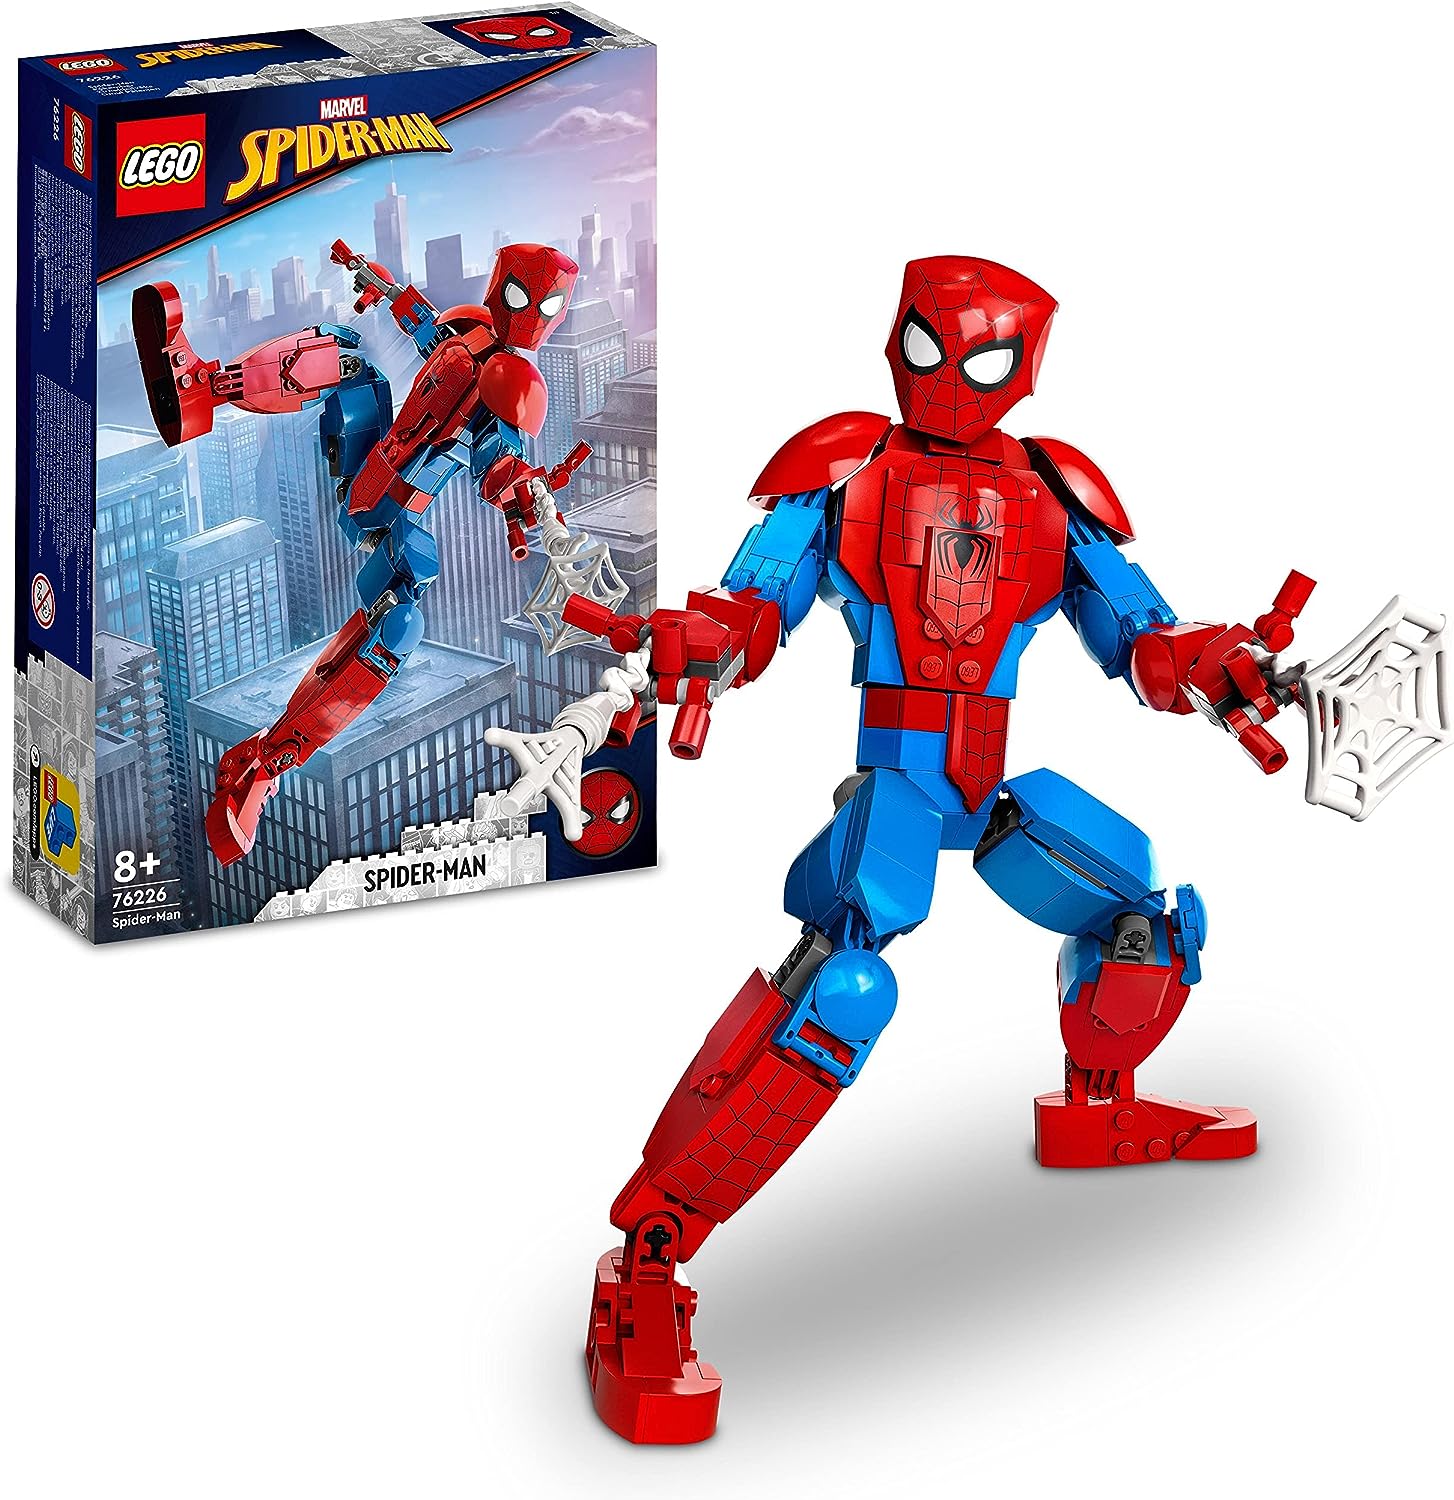 LEGO Marvel Spider Man 76226 Figur Action Spielzeug Superhelden Actionfigur Fanartikel Bausteine Set Spielzeug für Kinder